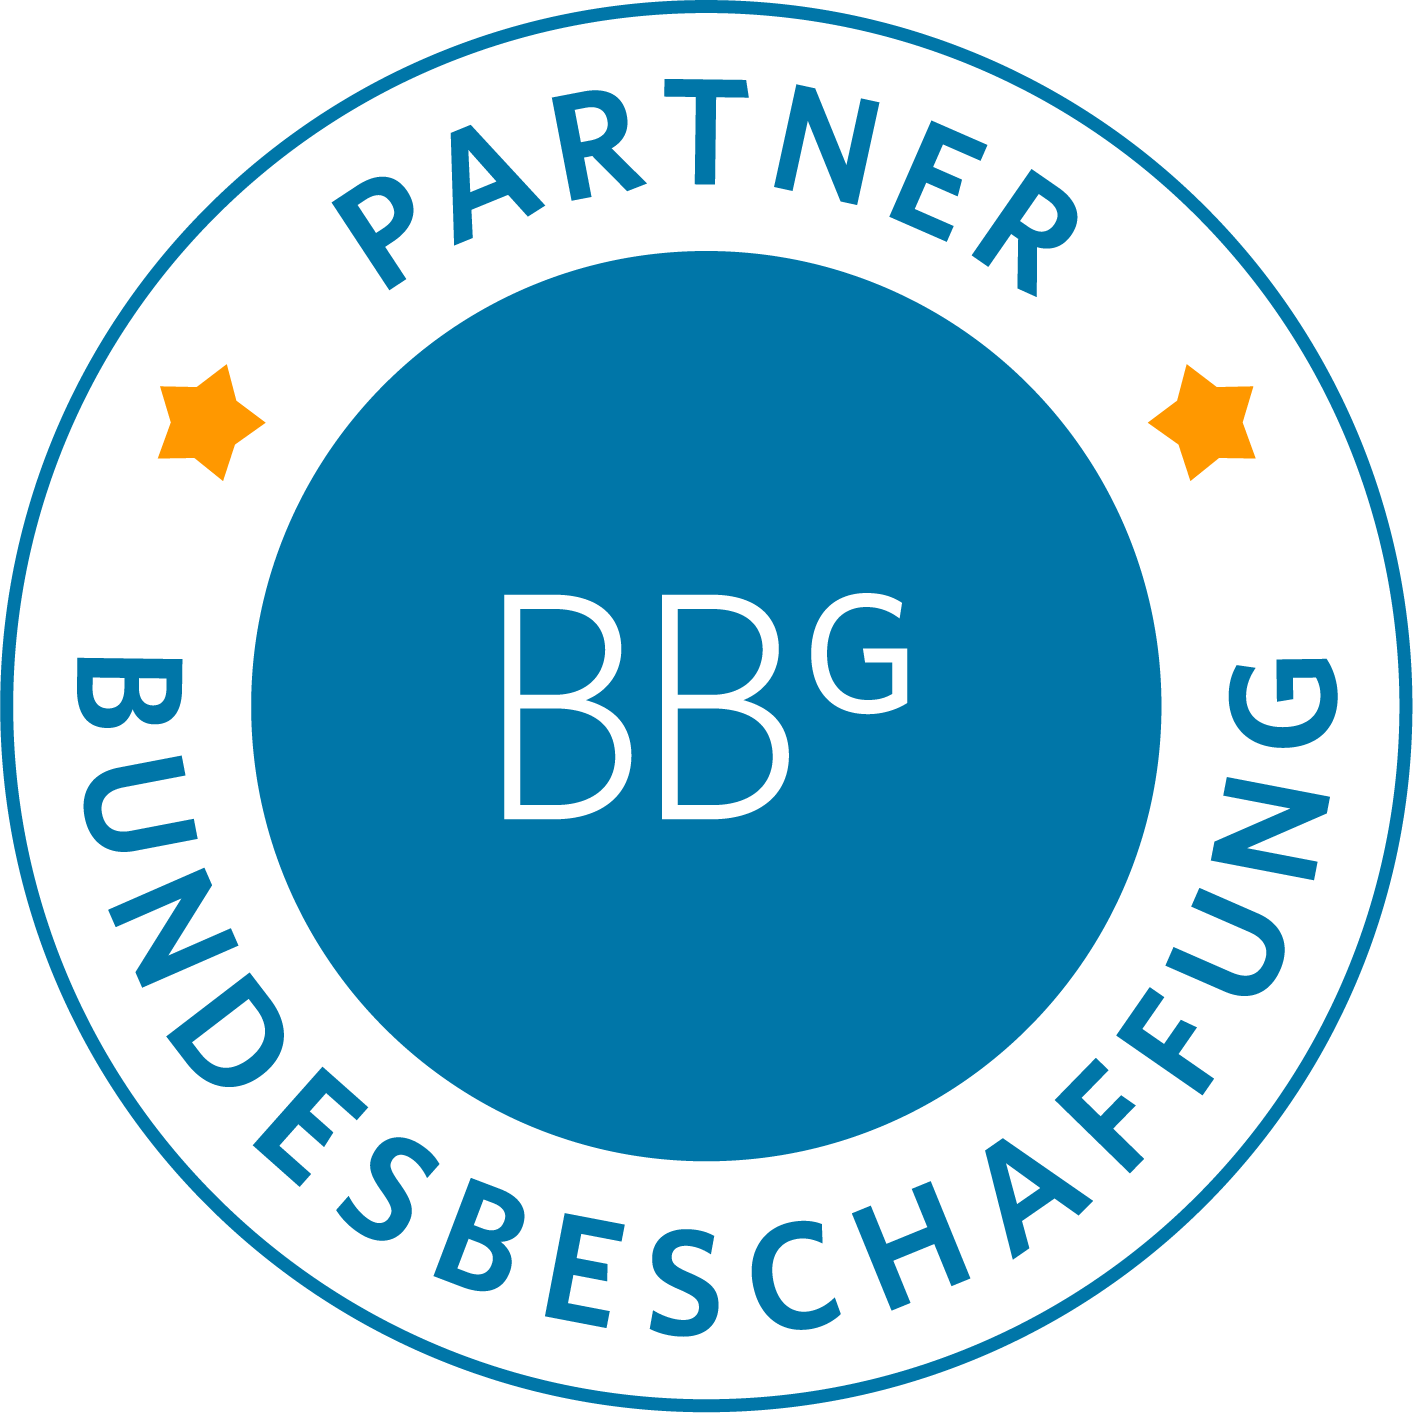 BBG_Partner-Siegel